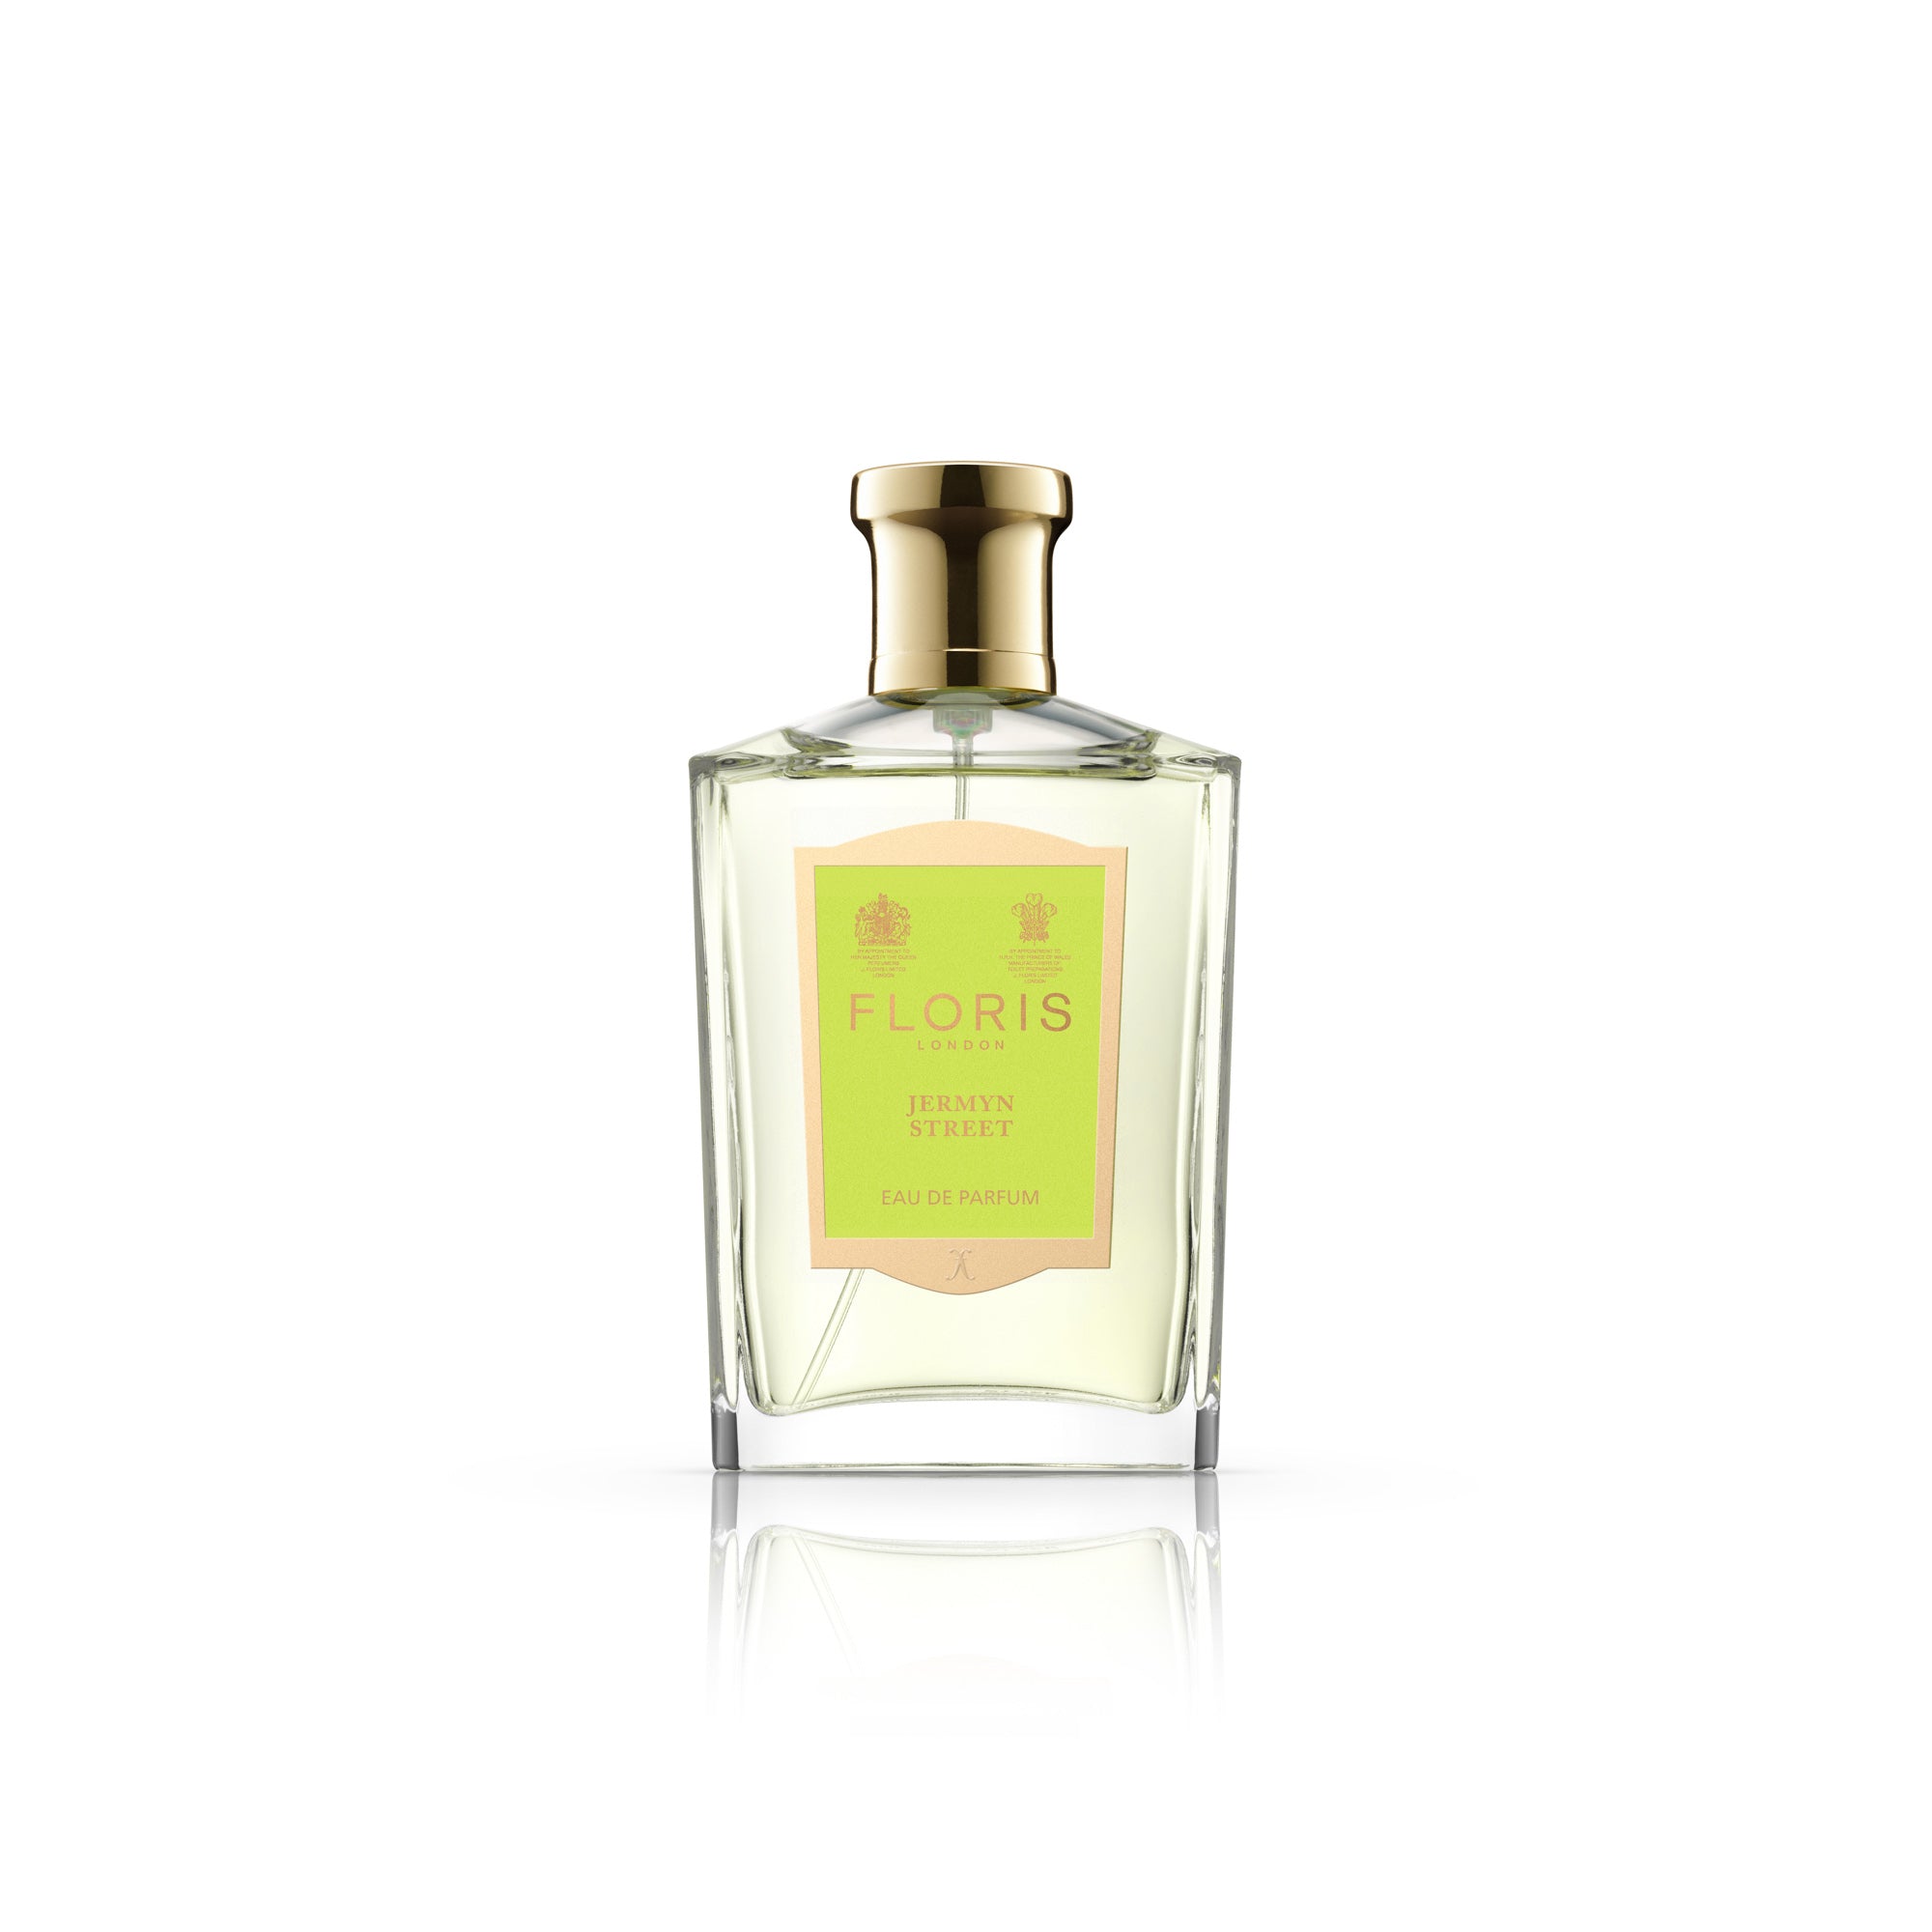 A FLORIS Jermyn Street 100 ML fragrance in a bottle on a white background.